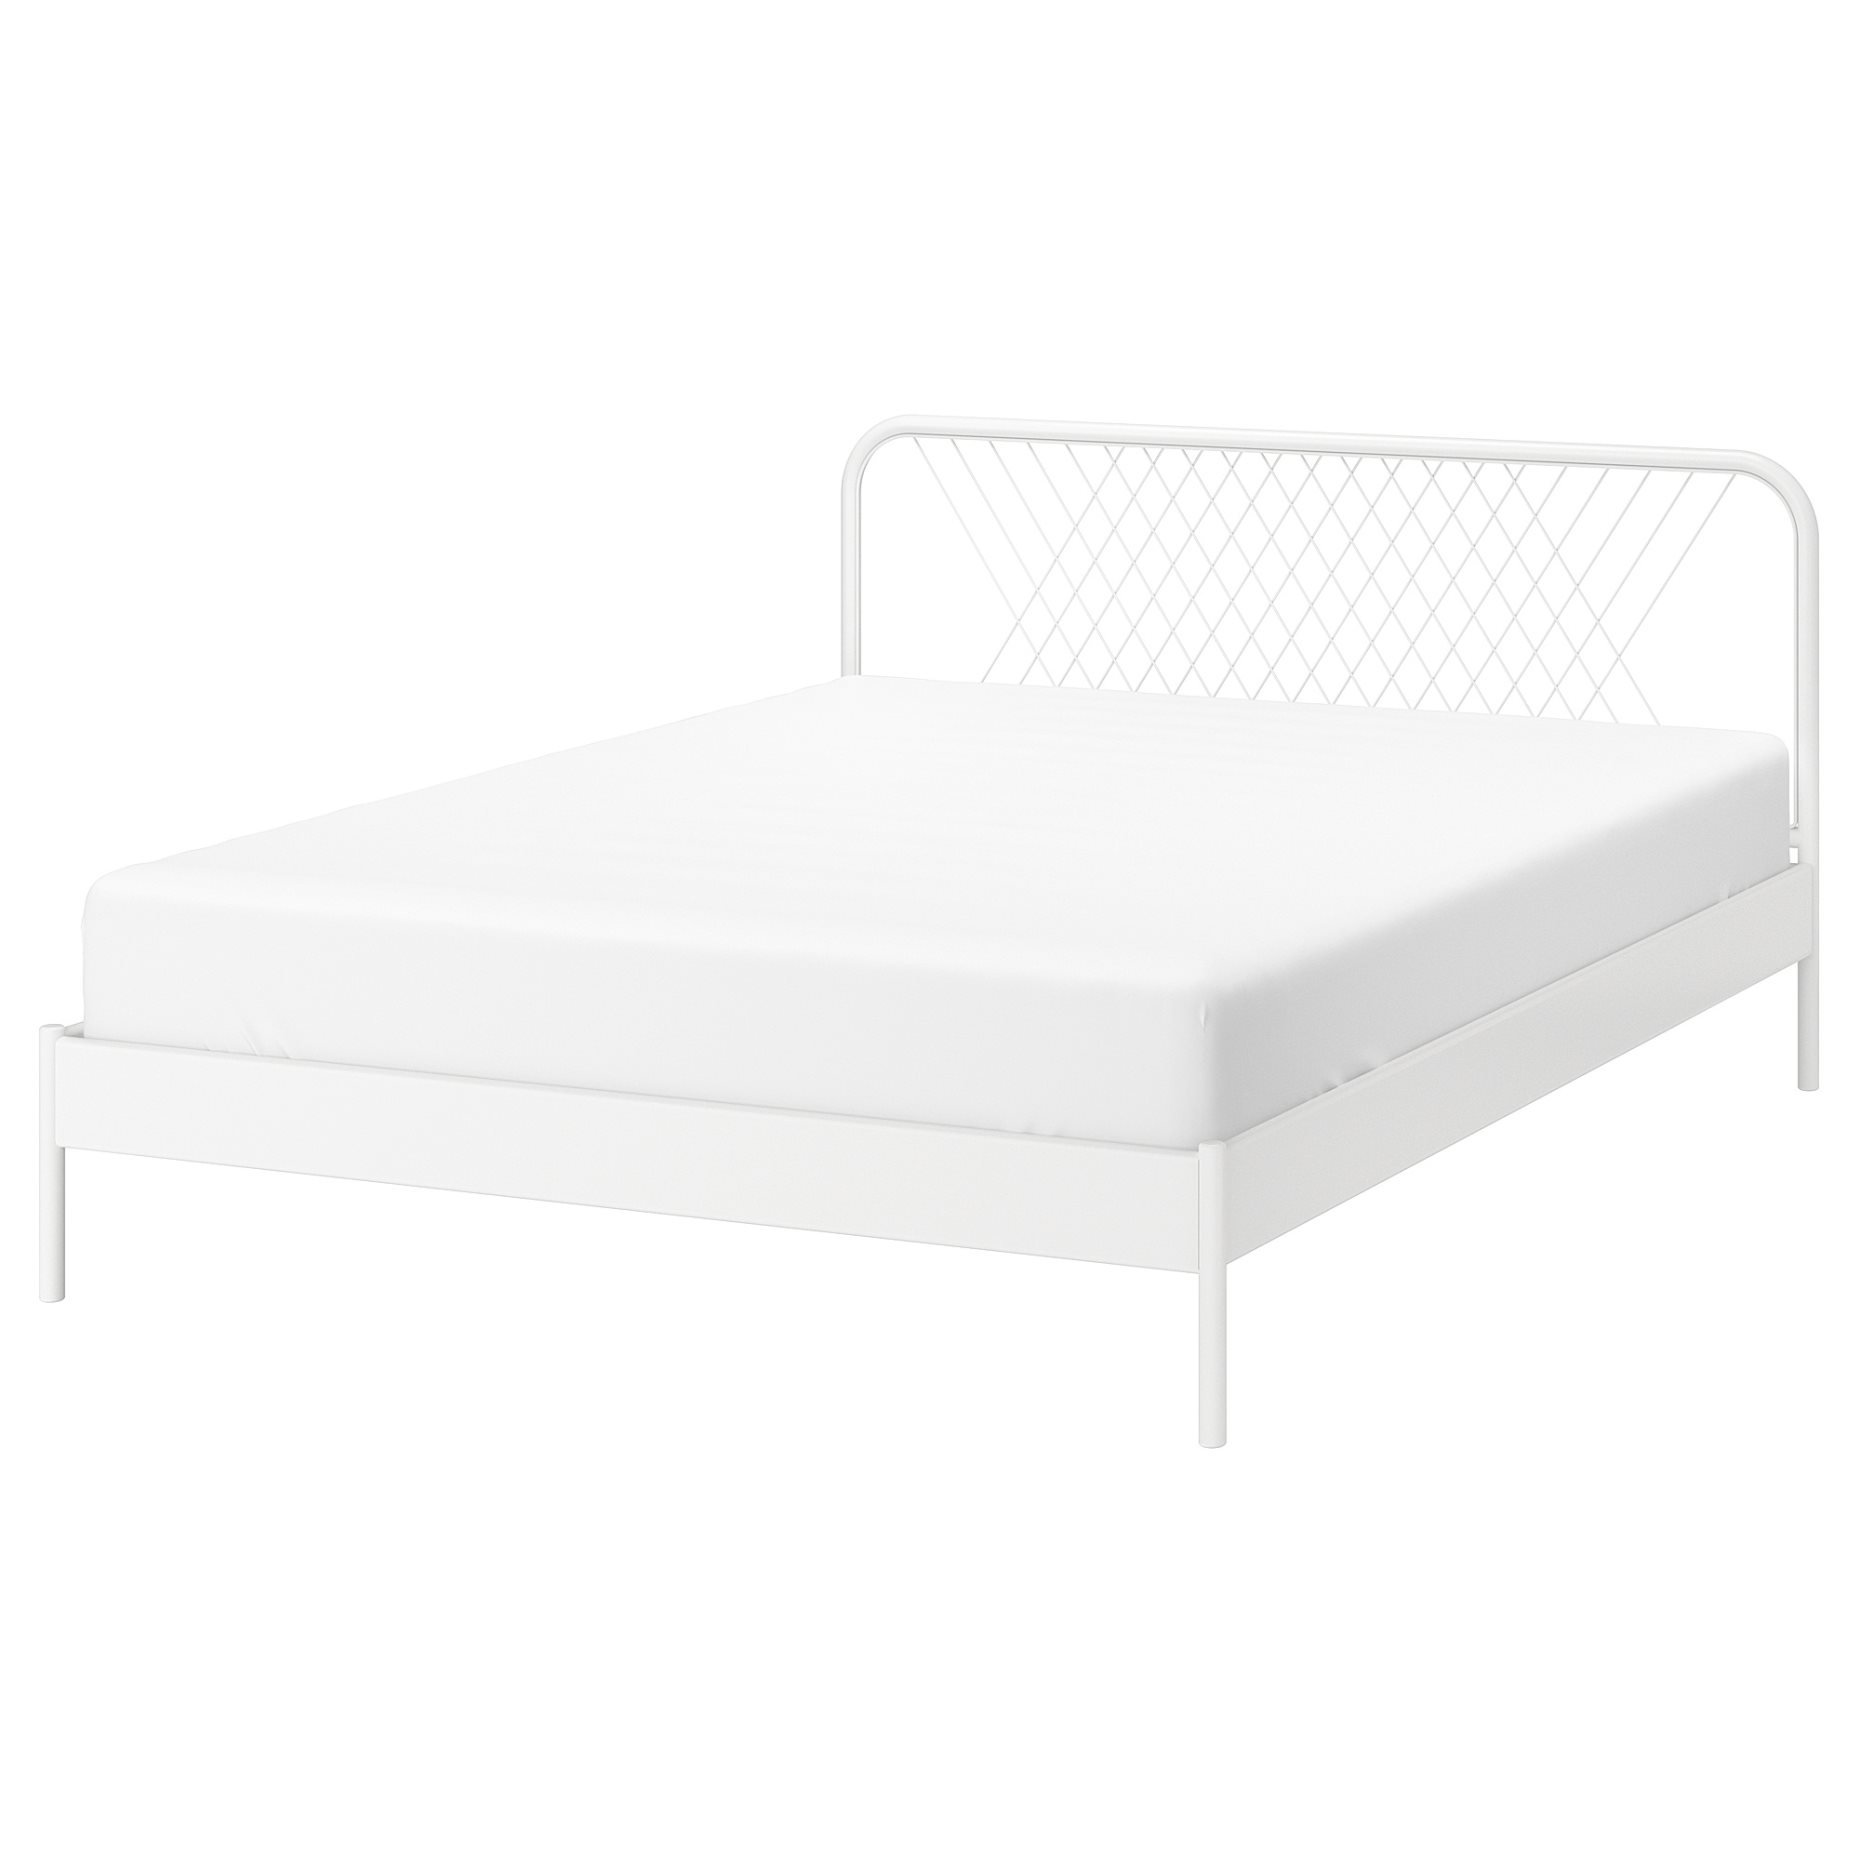 NESTTUN, bed frame, 140X200 cm, 491.580.65